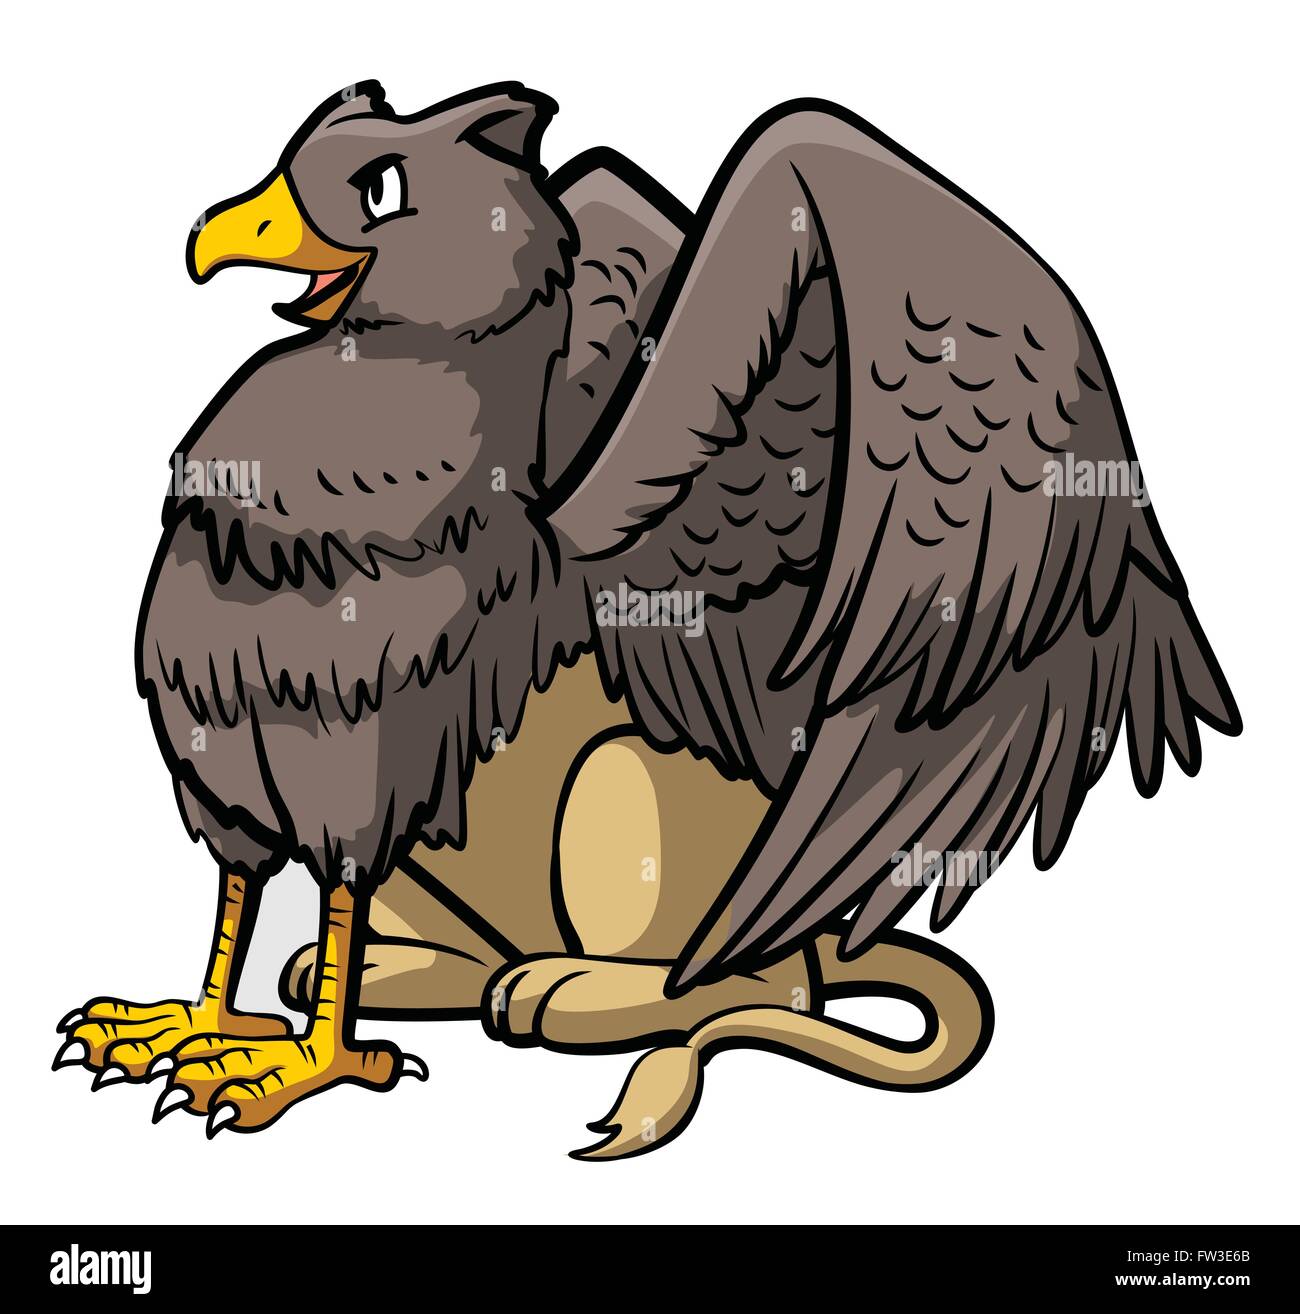 Guerrero águila Imágenes vectoriales de stock - Página 2 - Alamy